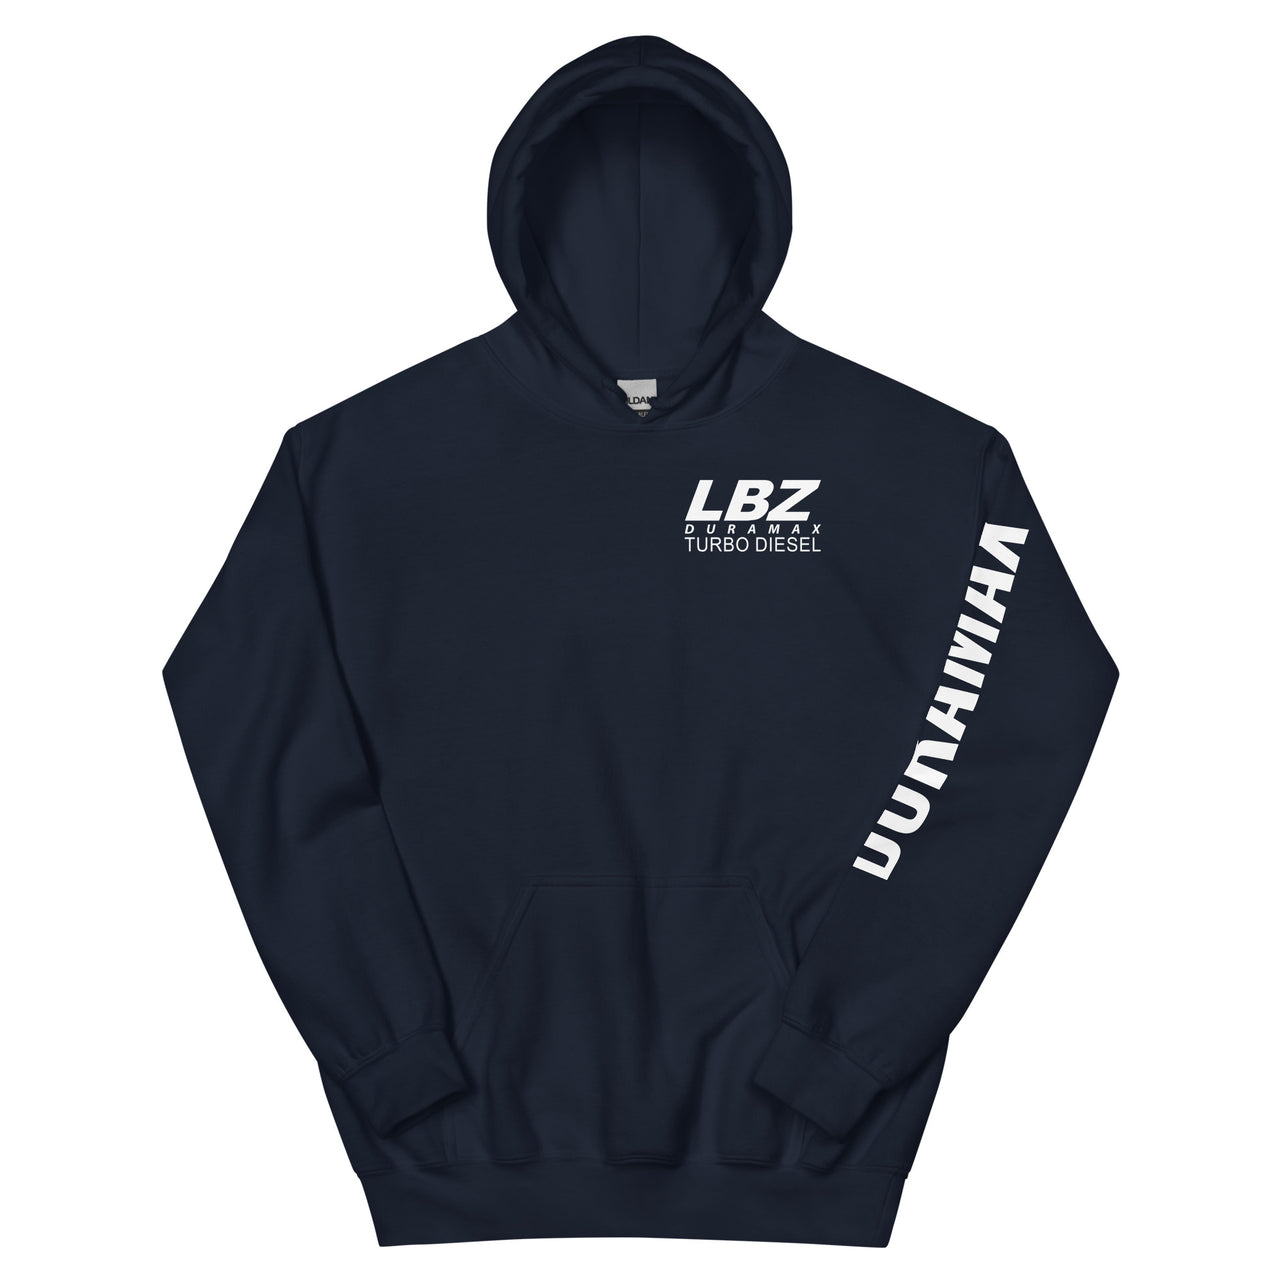 LBZ Duramax Hoodie Pullover Sweatshirt With Sleeve Print in navy